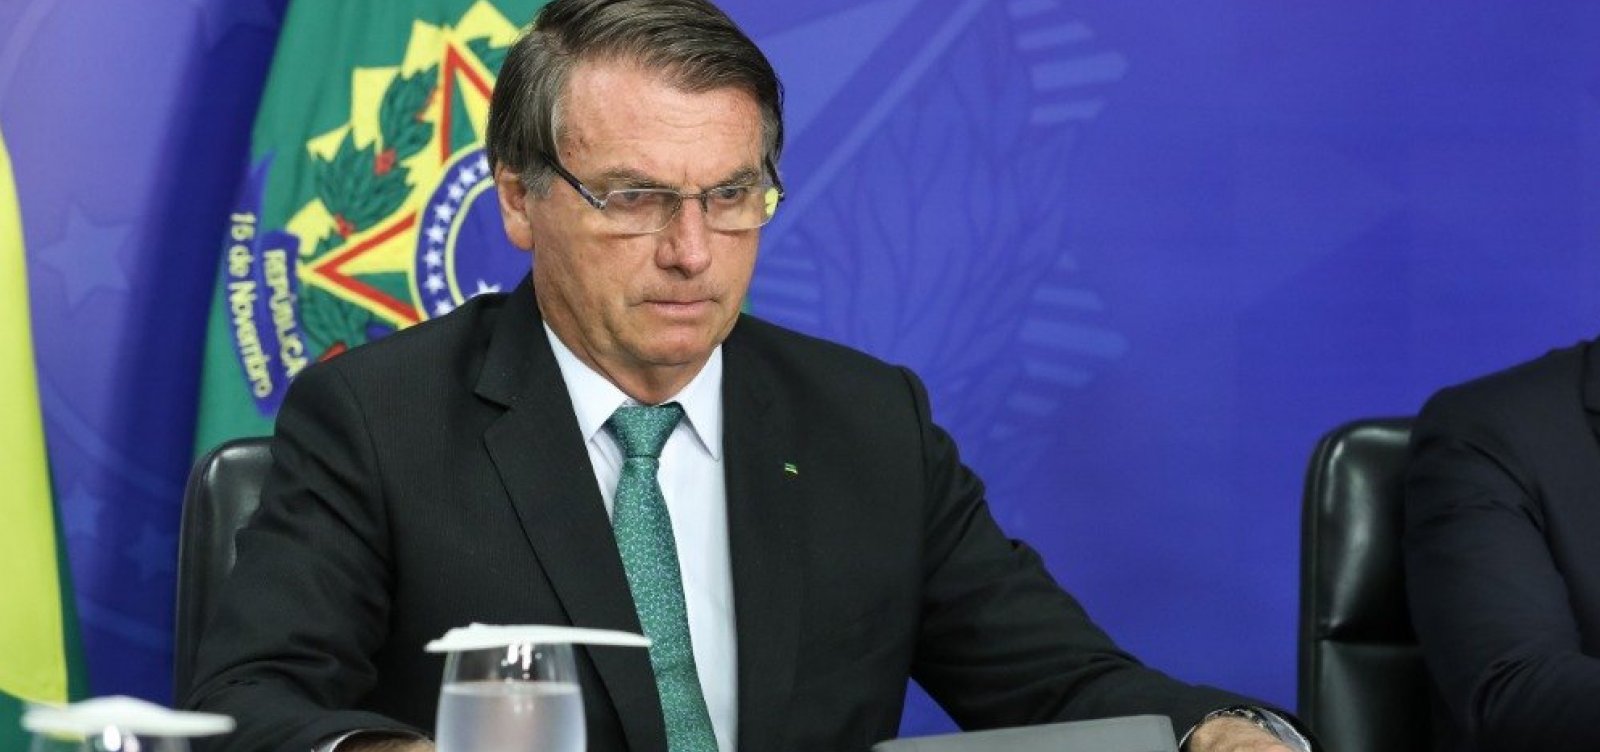  Bolsonaro despreza ômicron e sugere que variante é 'bem-vinda'